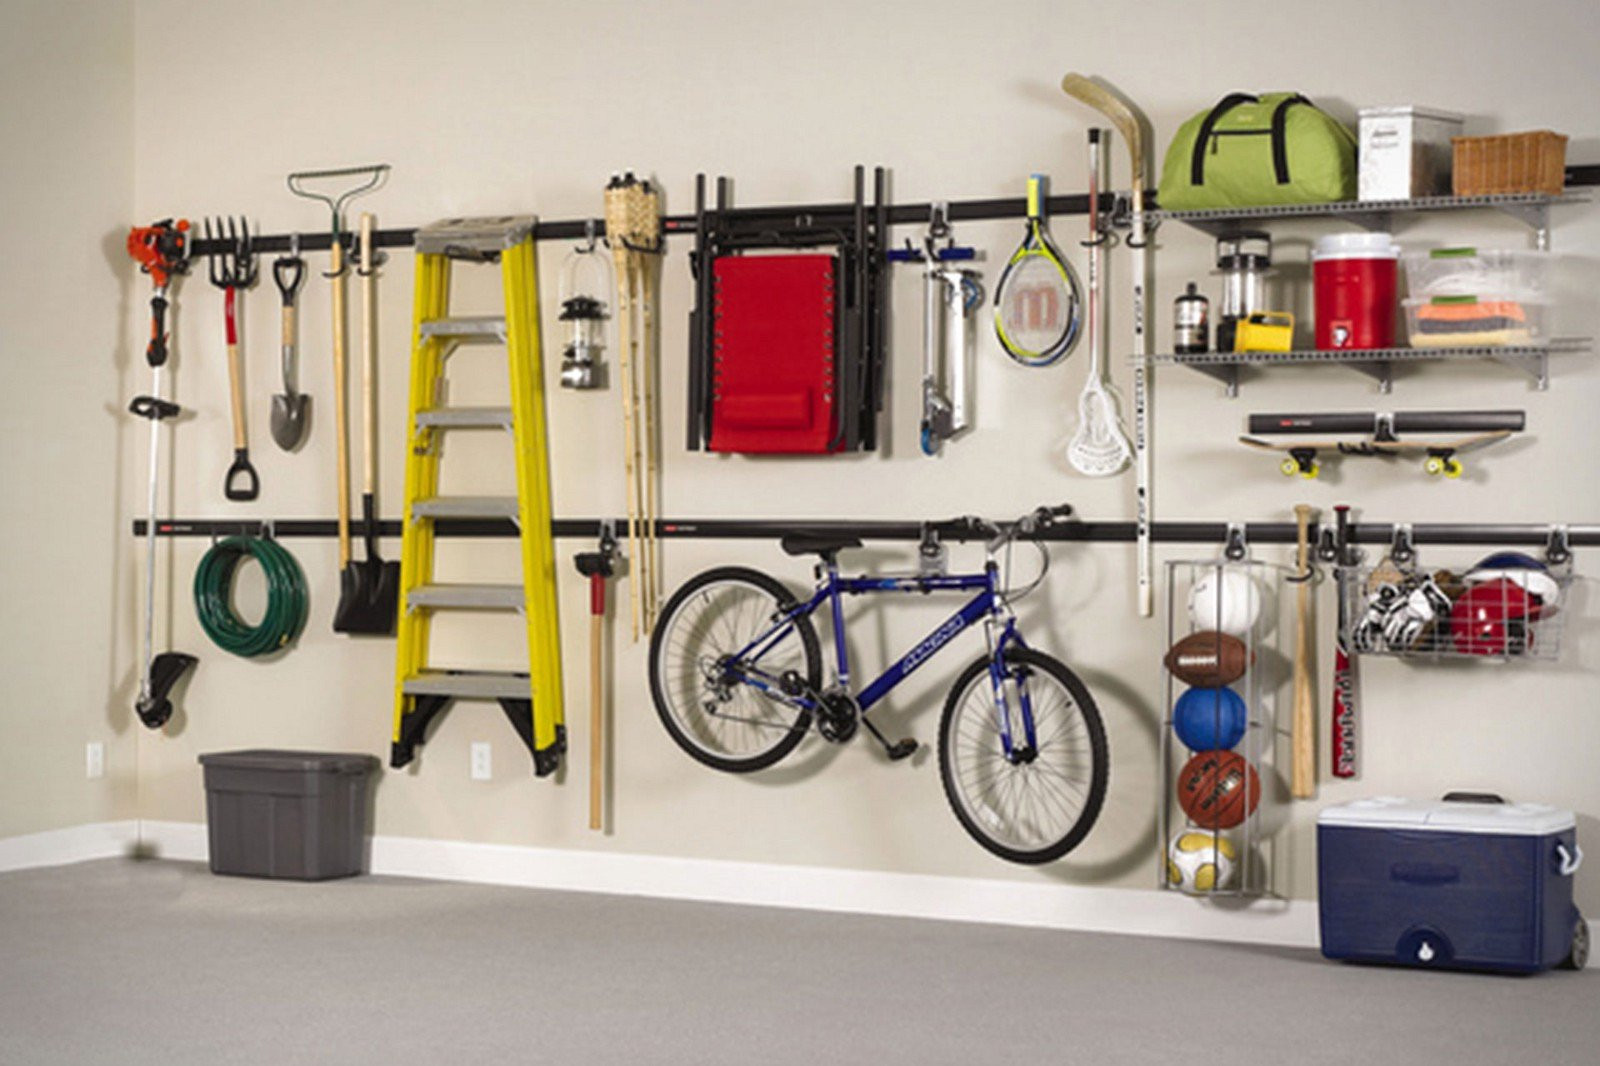 Best ideas about Garage Storage System
. Save or Pin 7 Great Garage Storage Ideas Now.